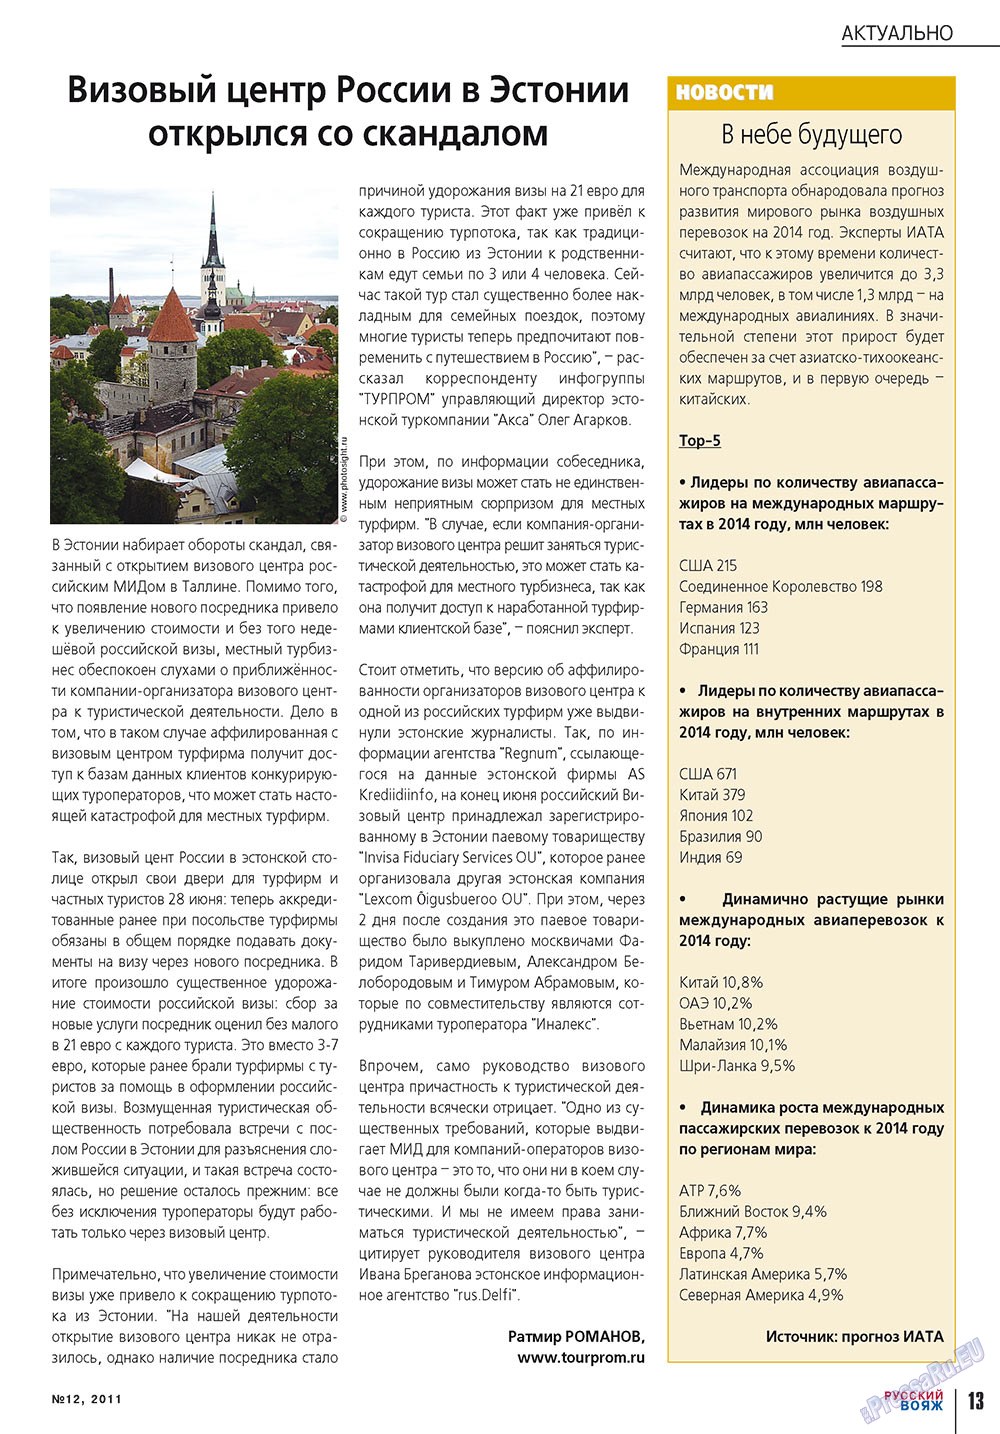 Русский вояж (журнал). 2011 год, номер 12, стр. 13